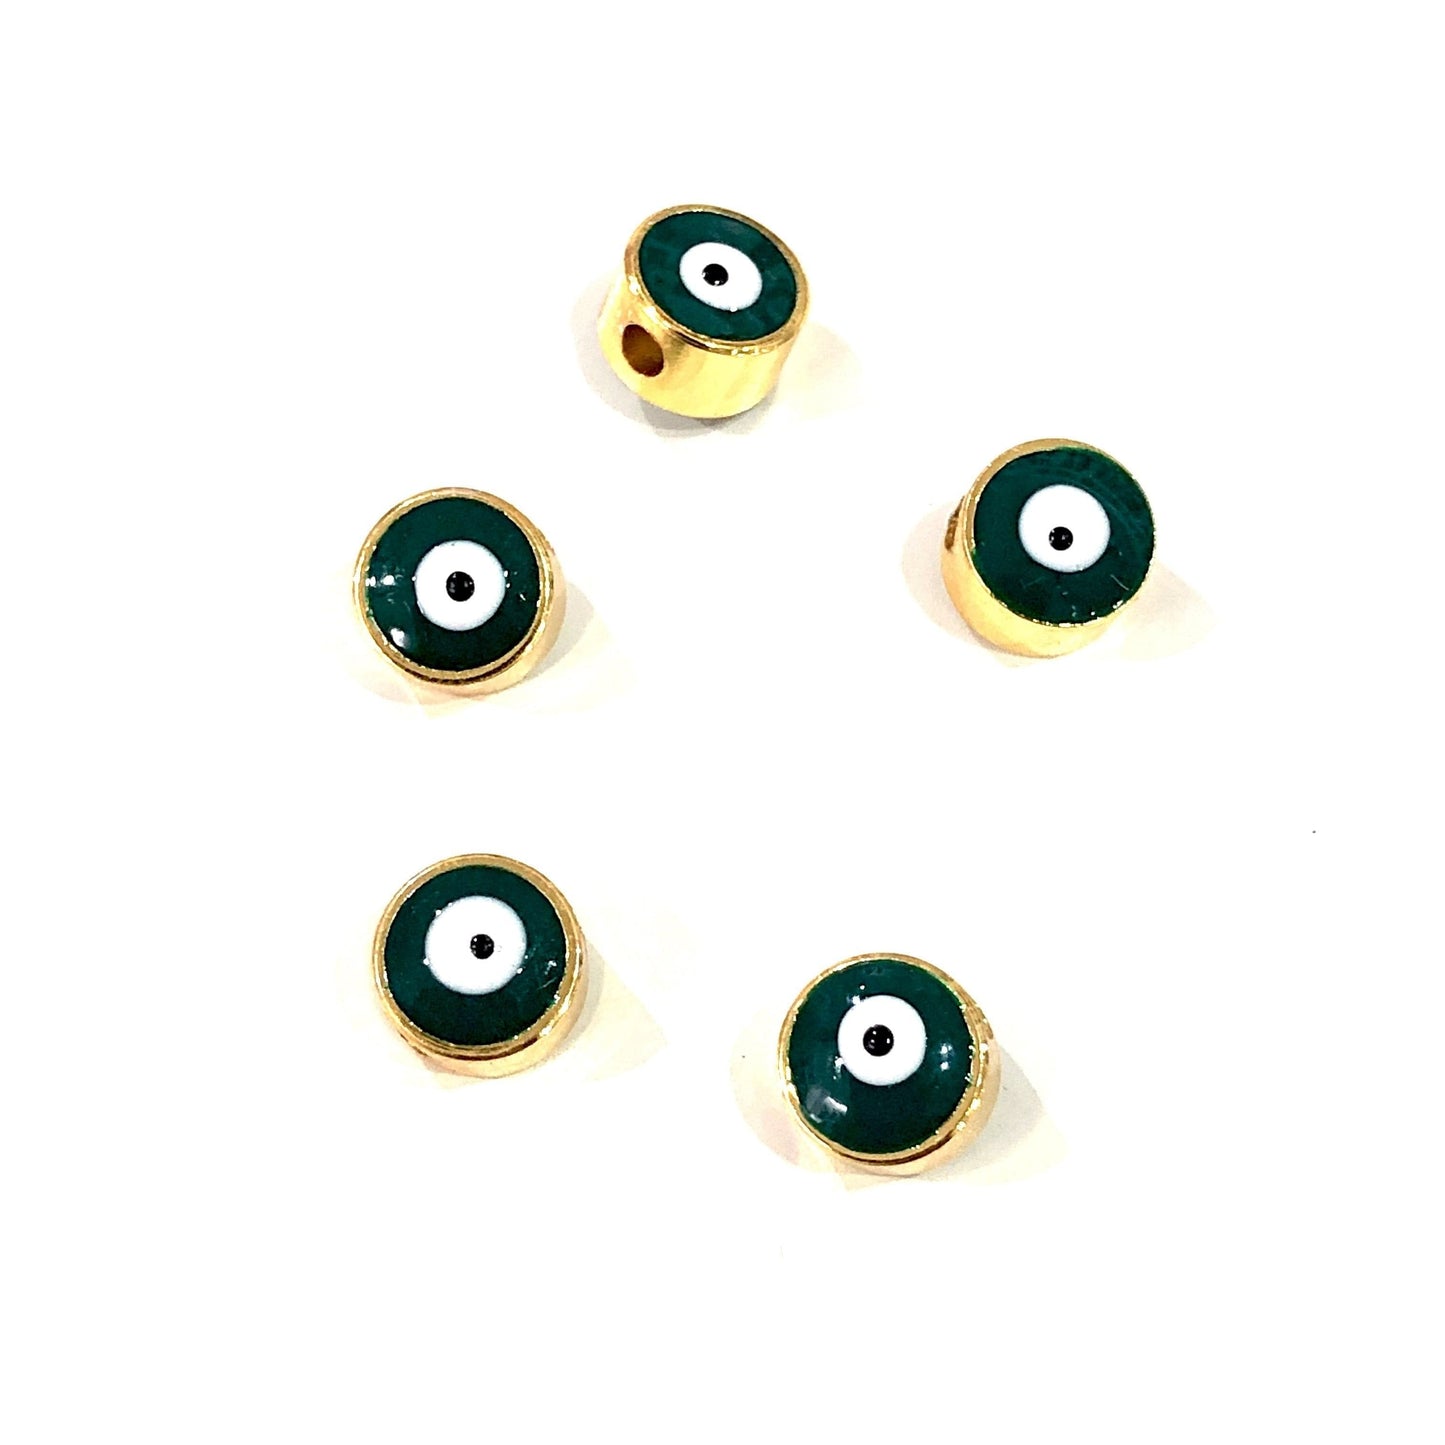 Vergoldete verputzte Böse-Augen-Perlen 6 mm - Grün 